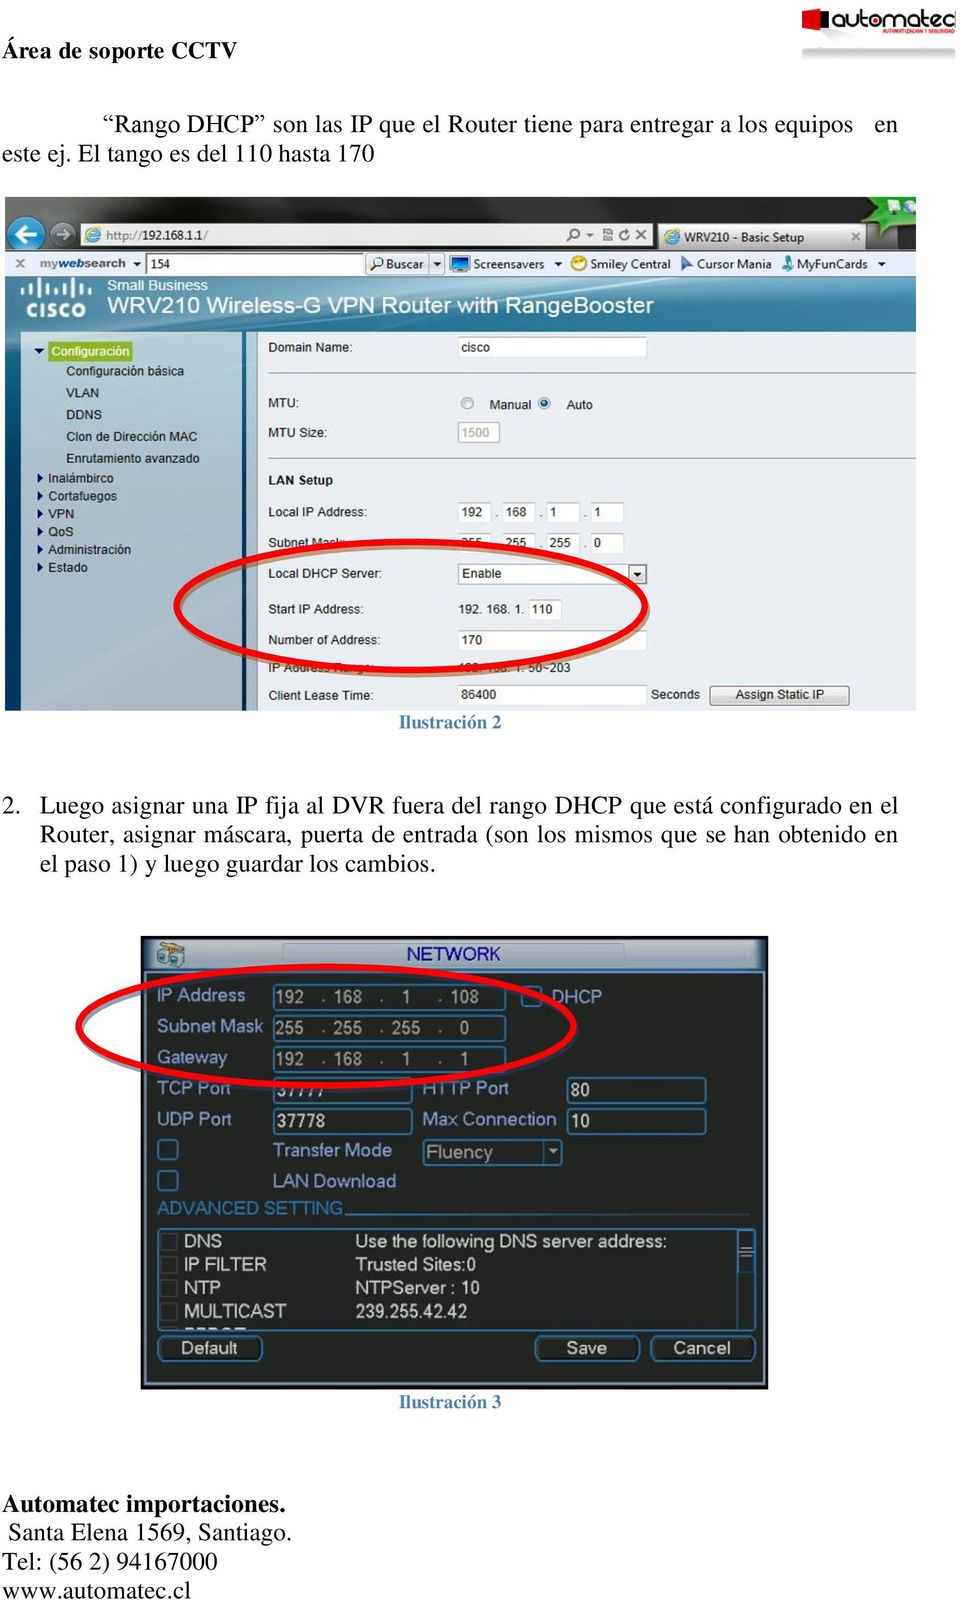 Luego asignar una IP fija al DVR fuera del rango DHCP que está configurado en el